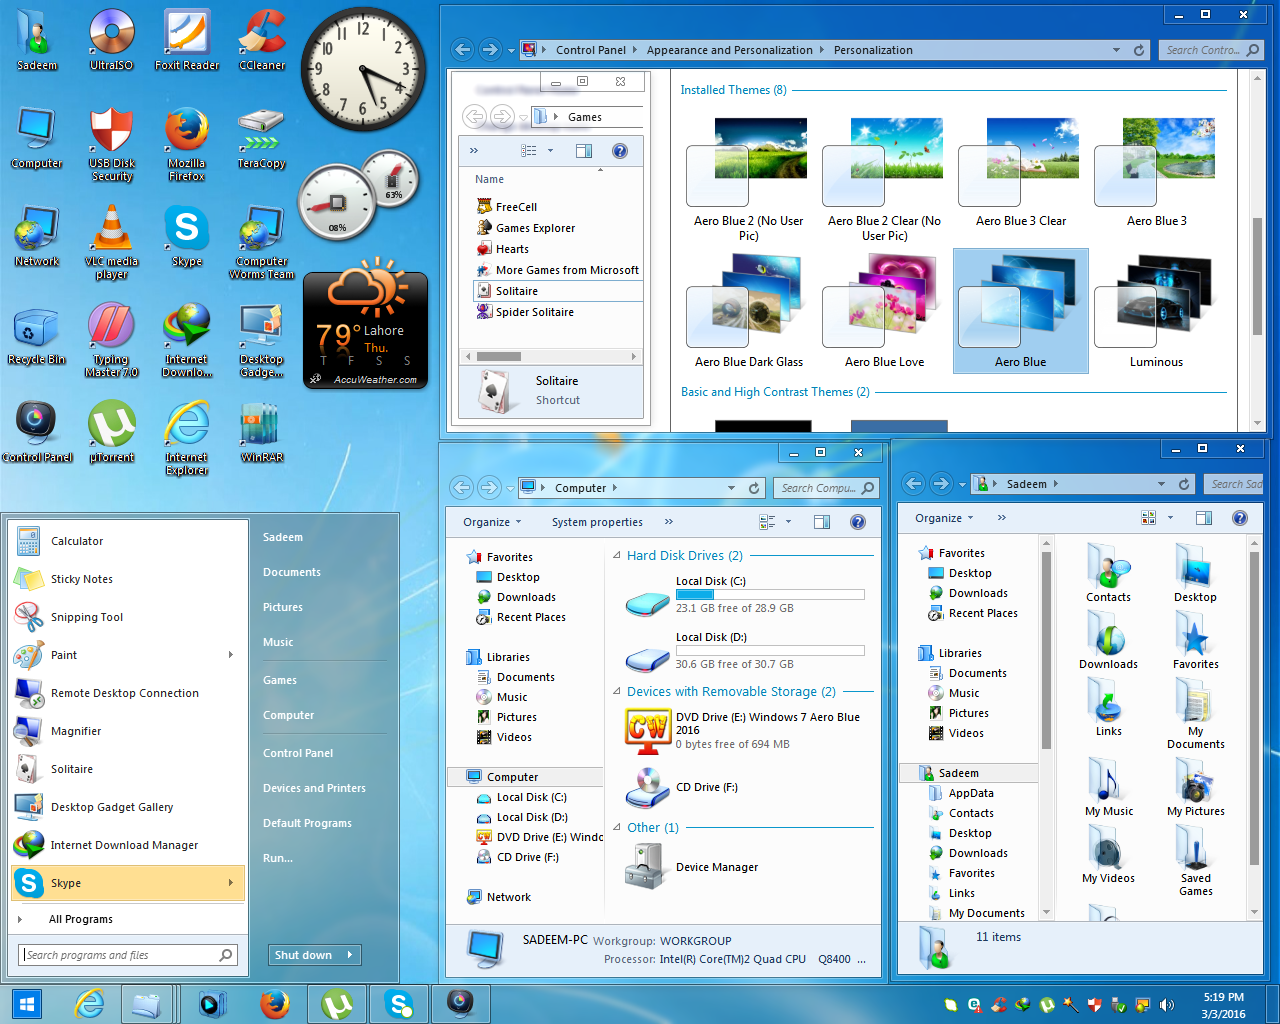 windows 11 os free download full version